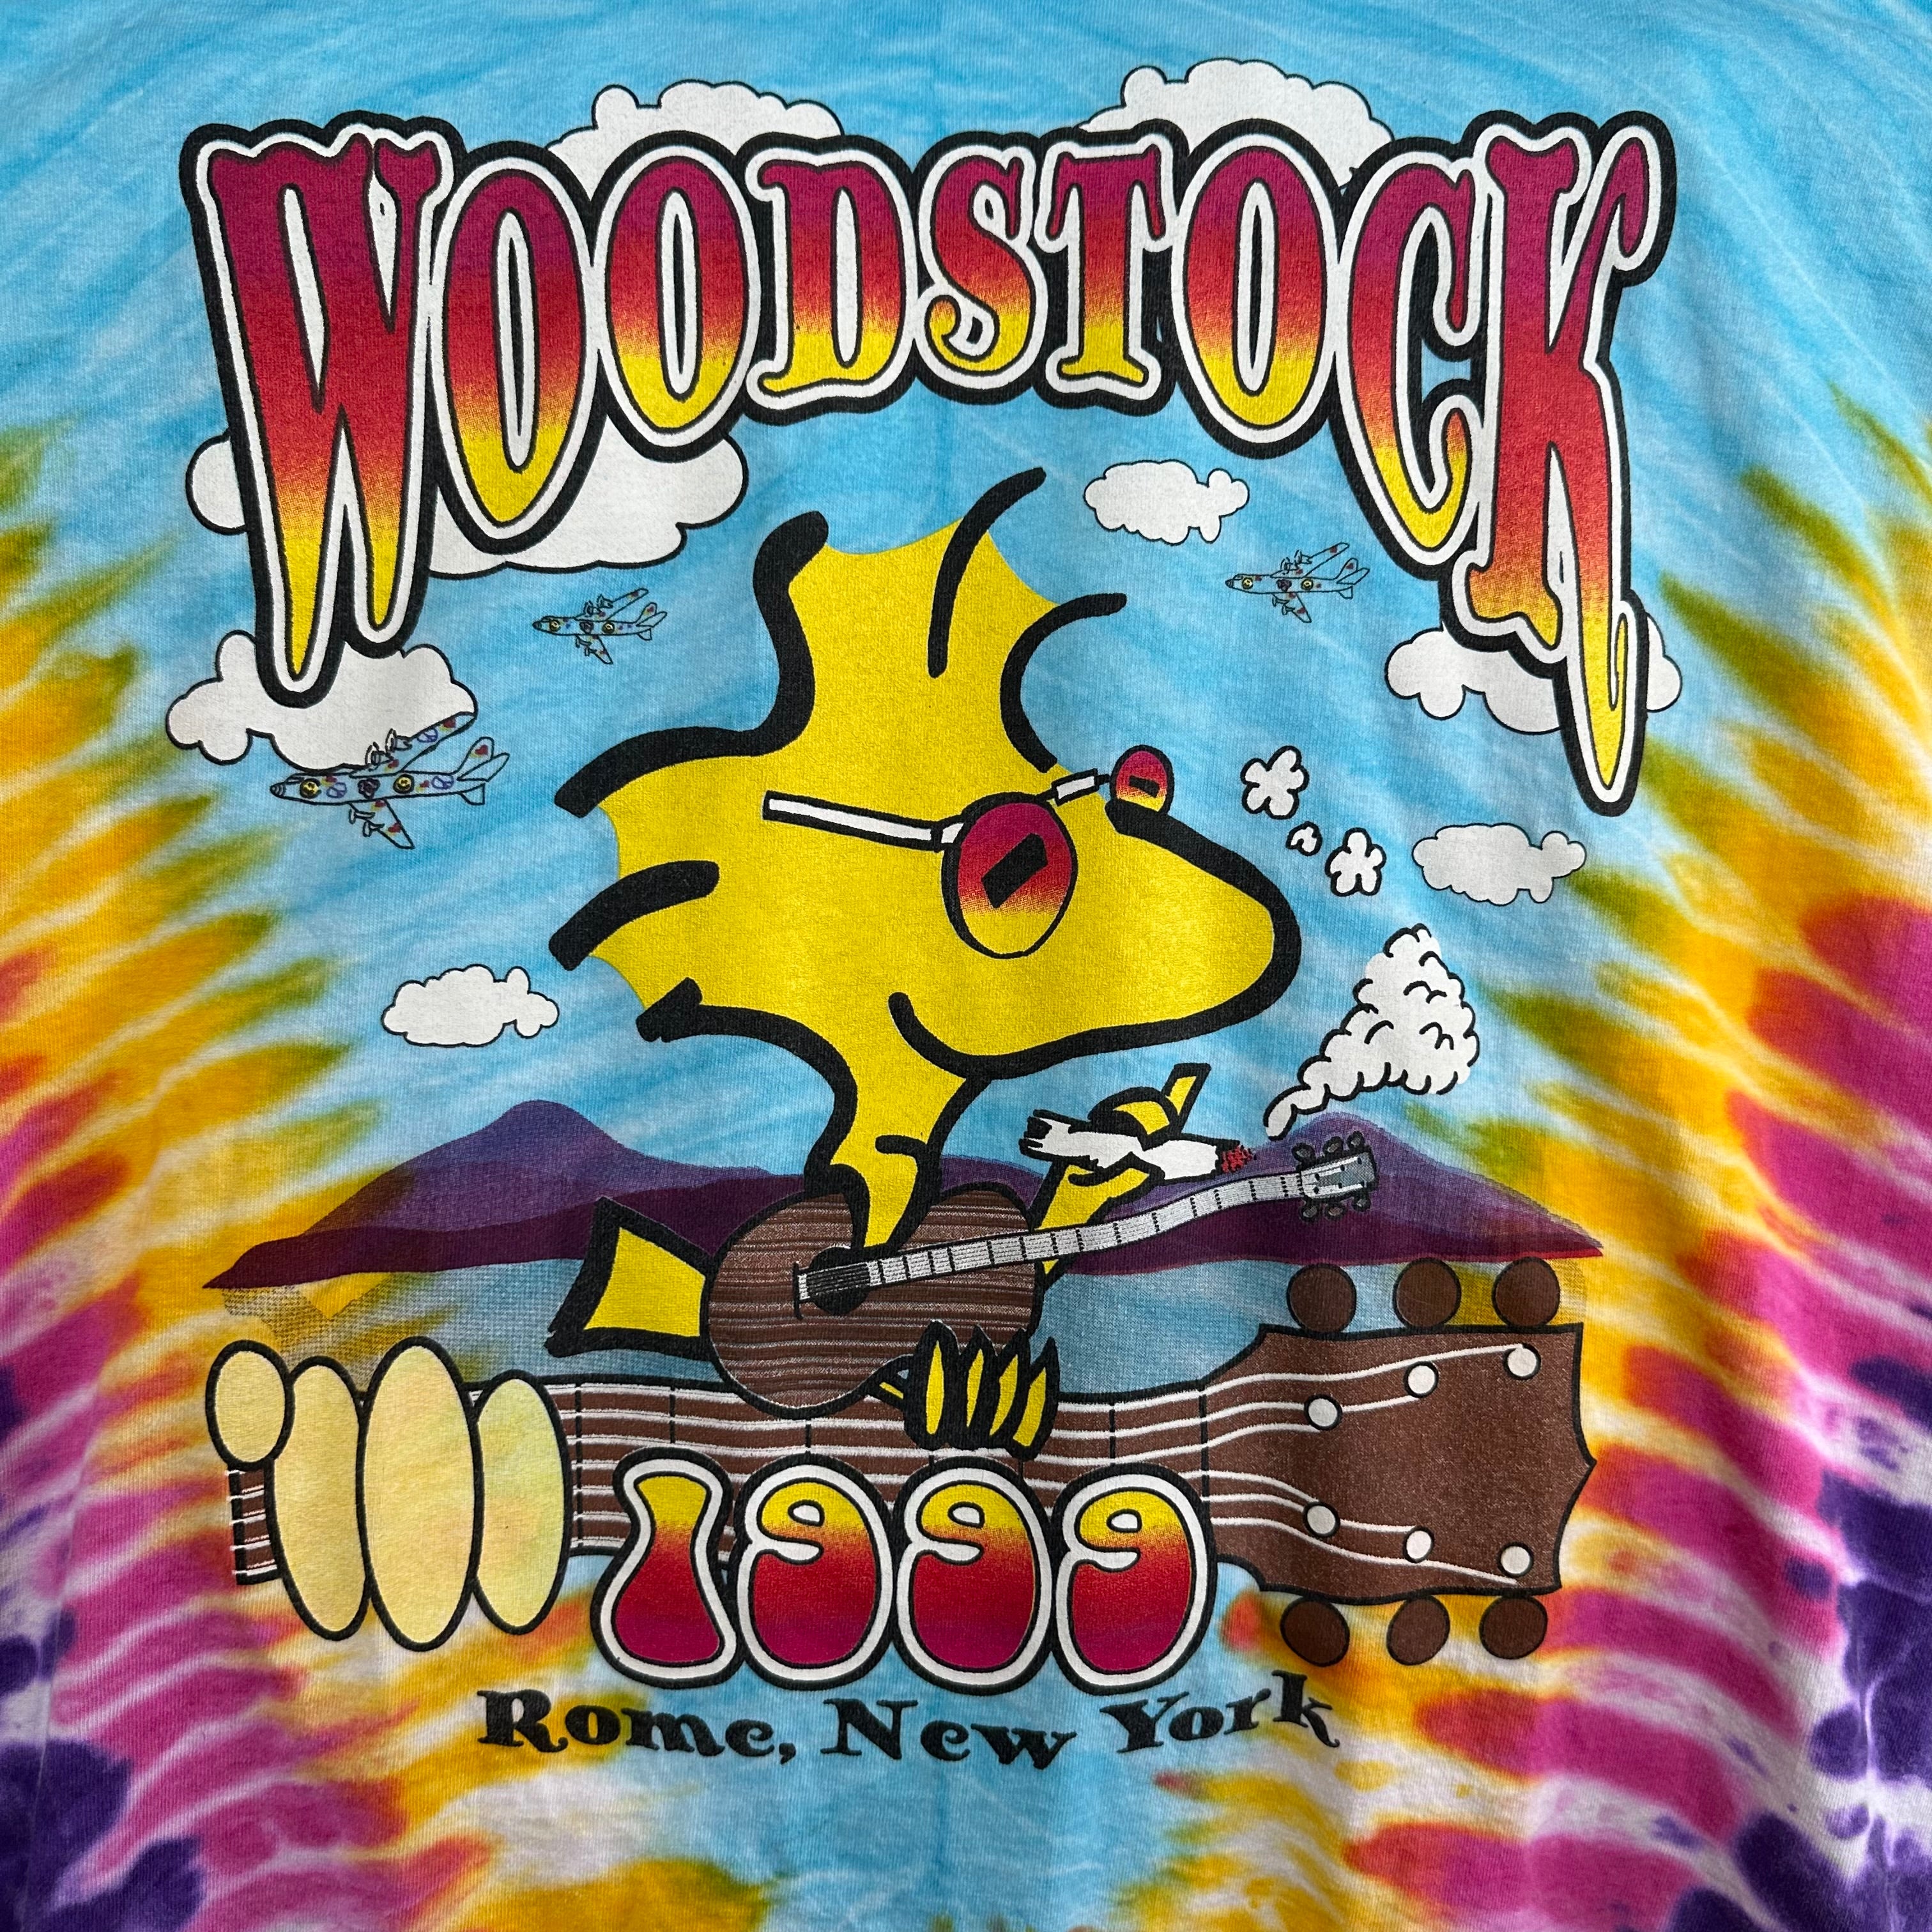 Woodstock ‘99 Tye Dye T-Shirt